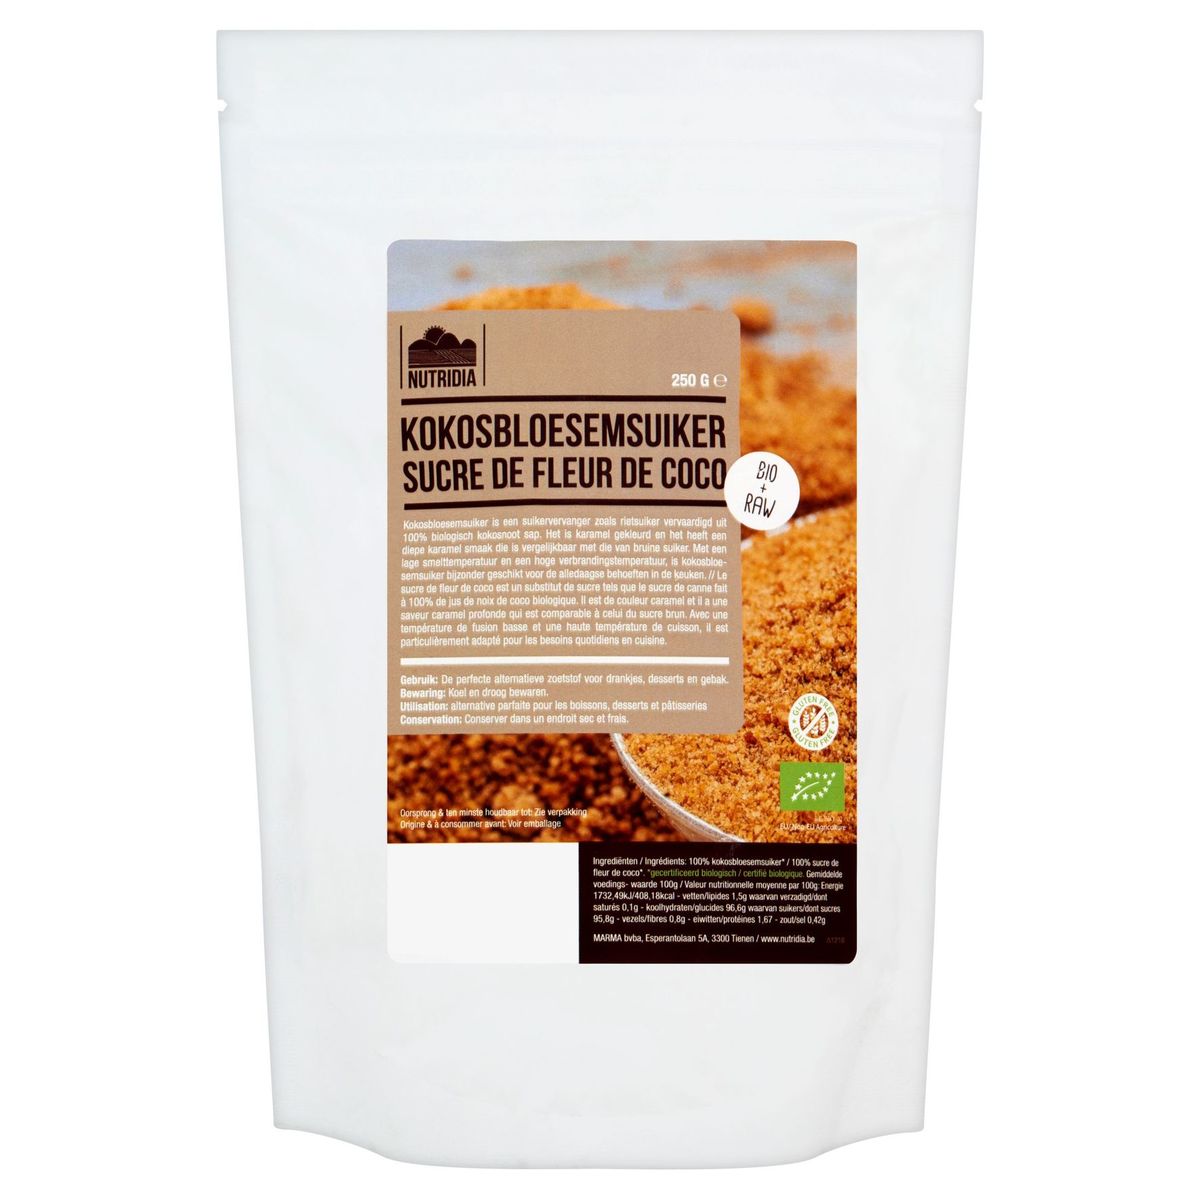 Nutridia Bio + Raw Kokosbloesemsuiker 250 g